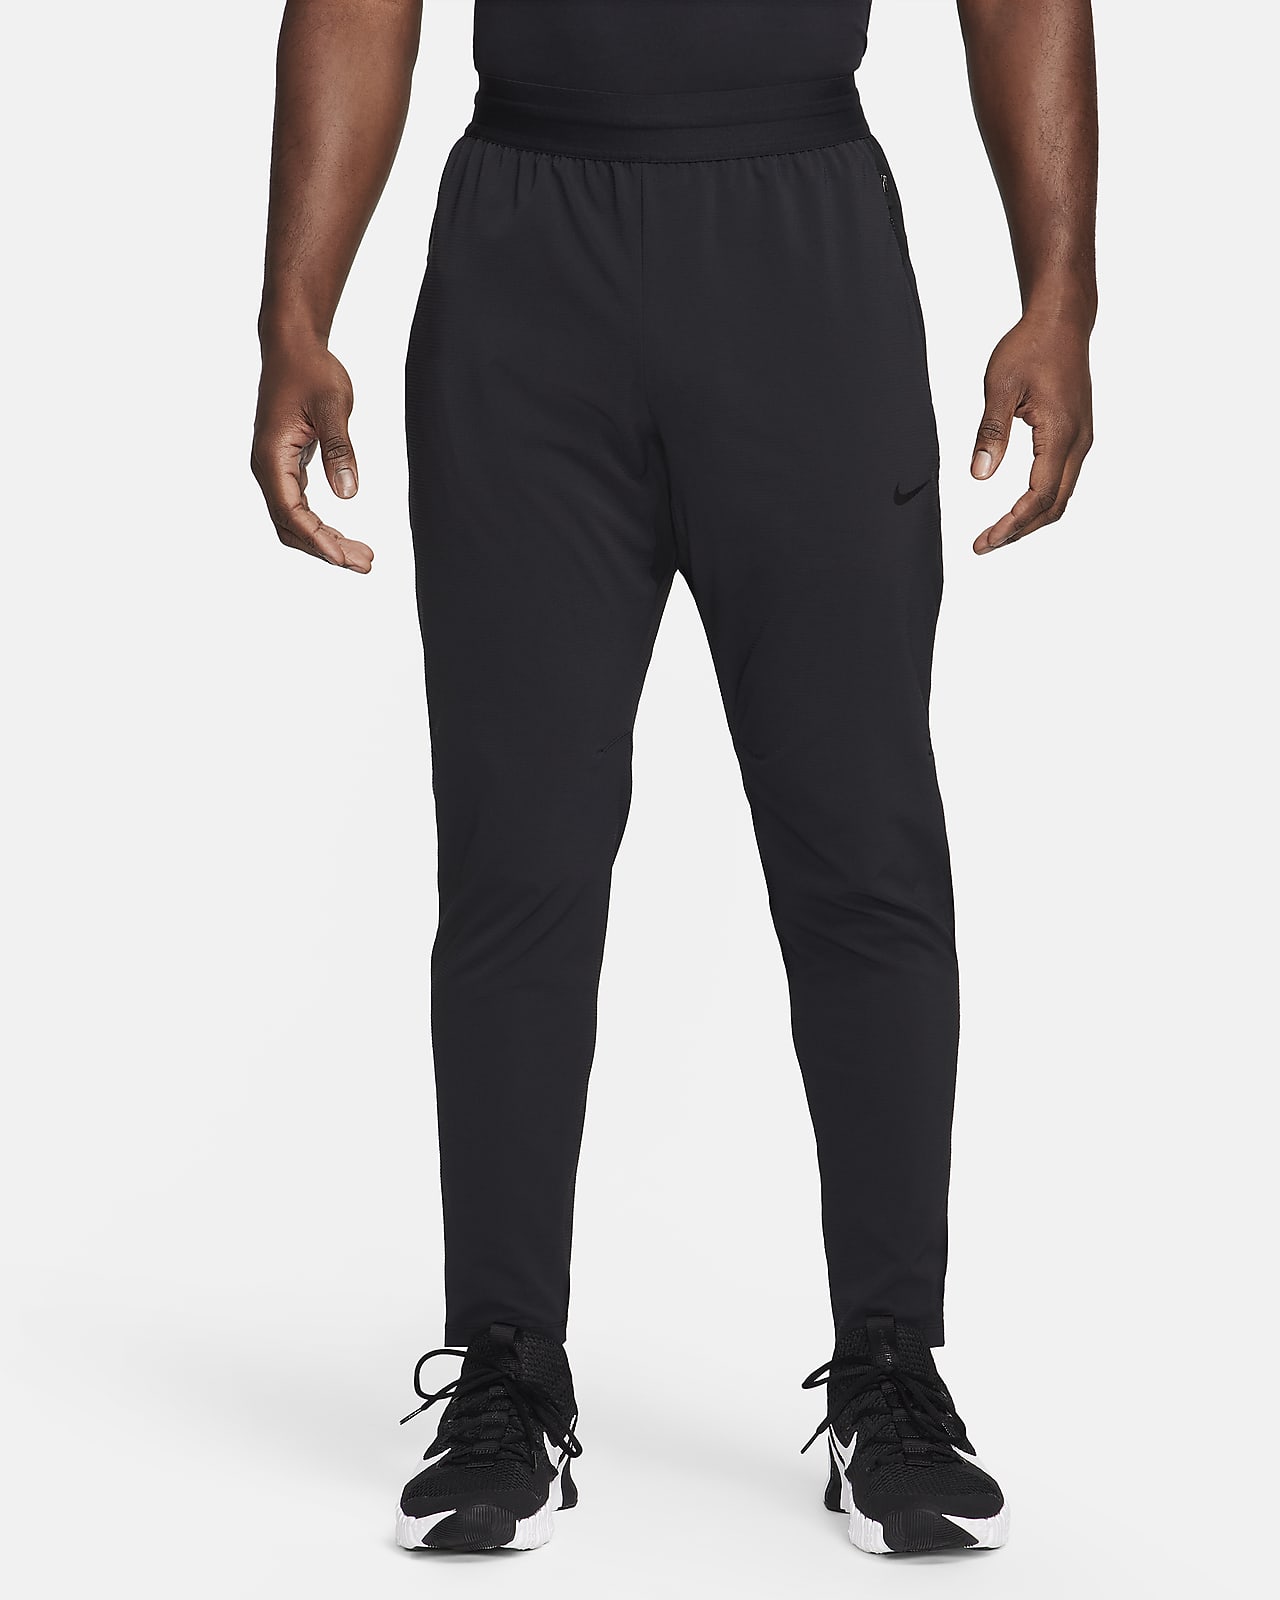 Calções de fitness Dri-FIT Nike Flex Rep para homem